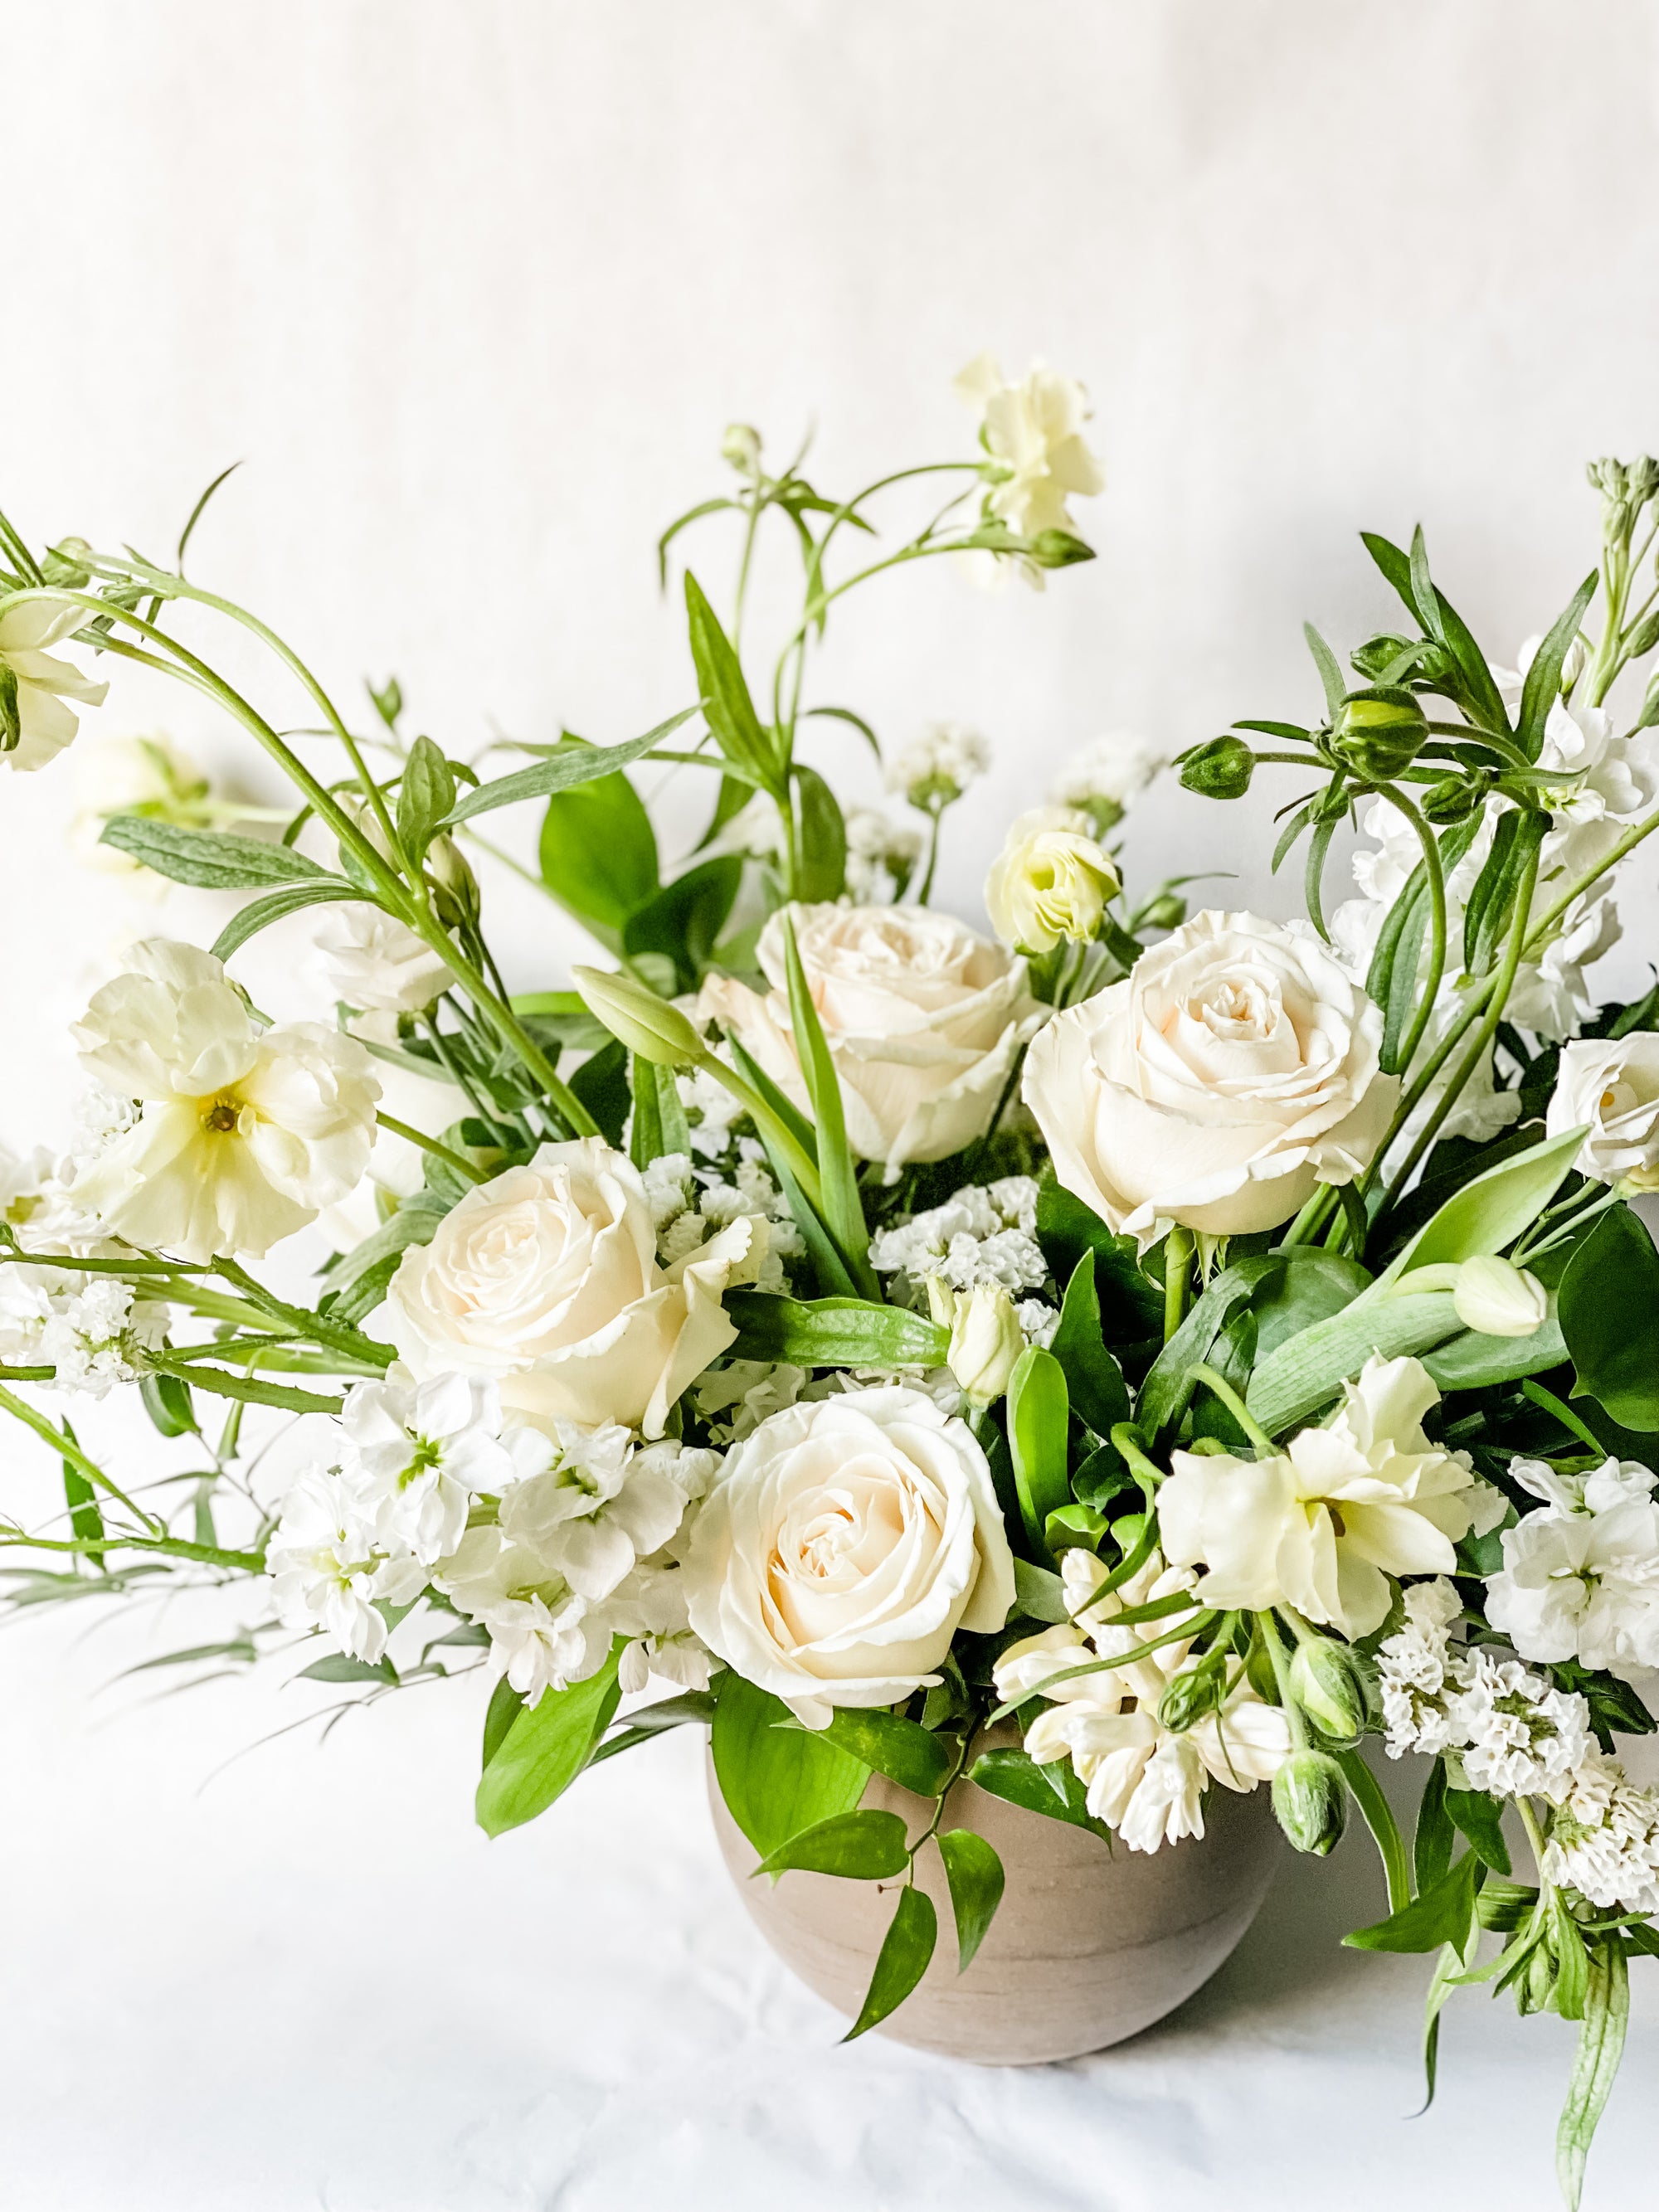 Living Fresh - Large Sympathy or Celebration Vase Arrangement